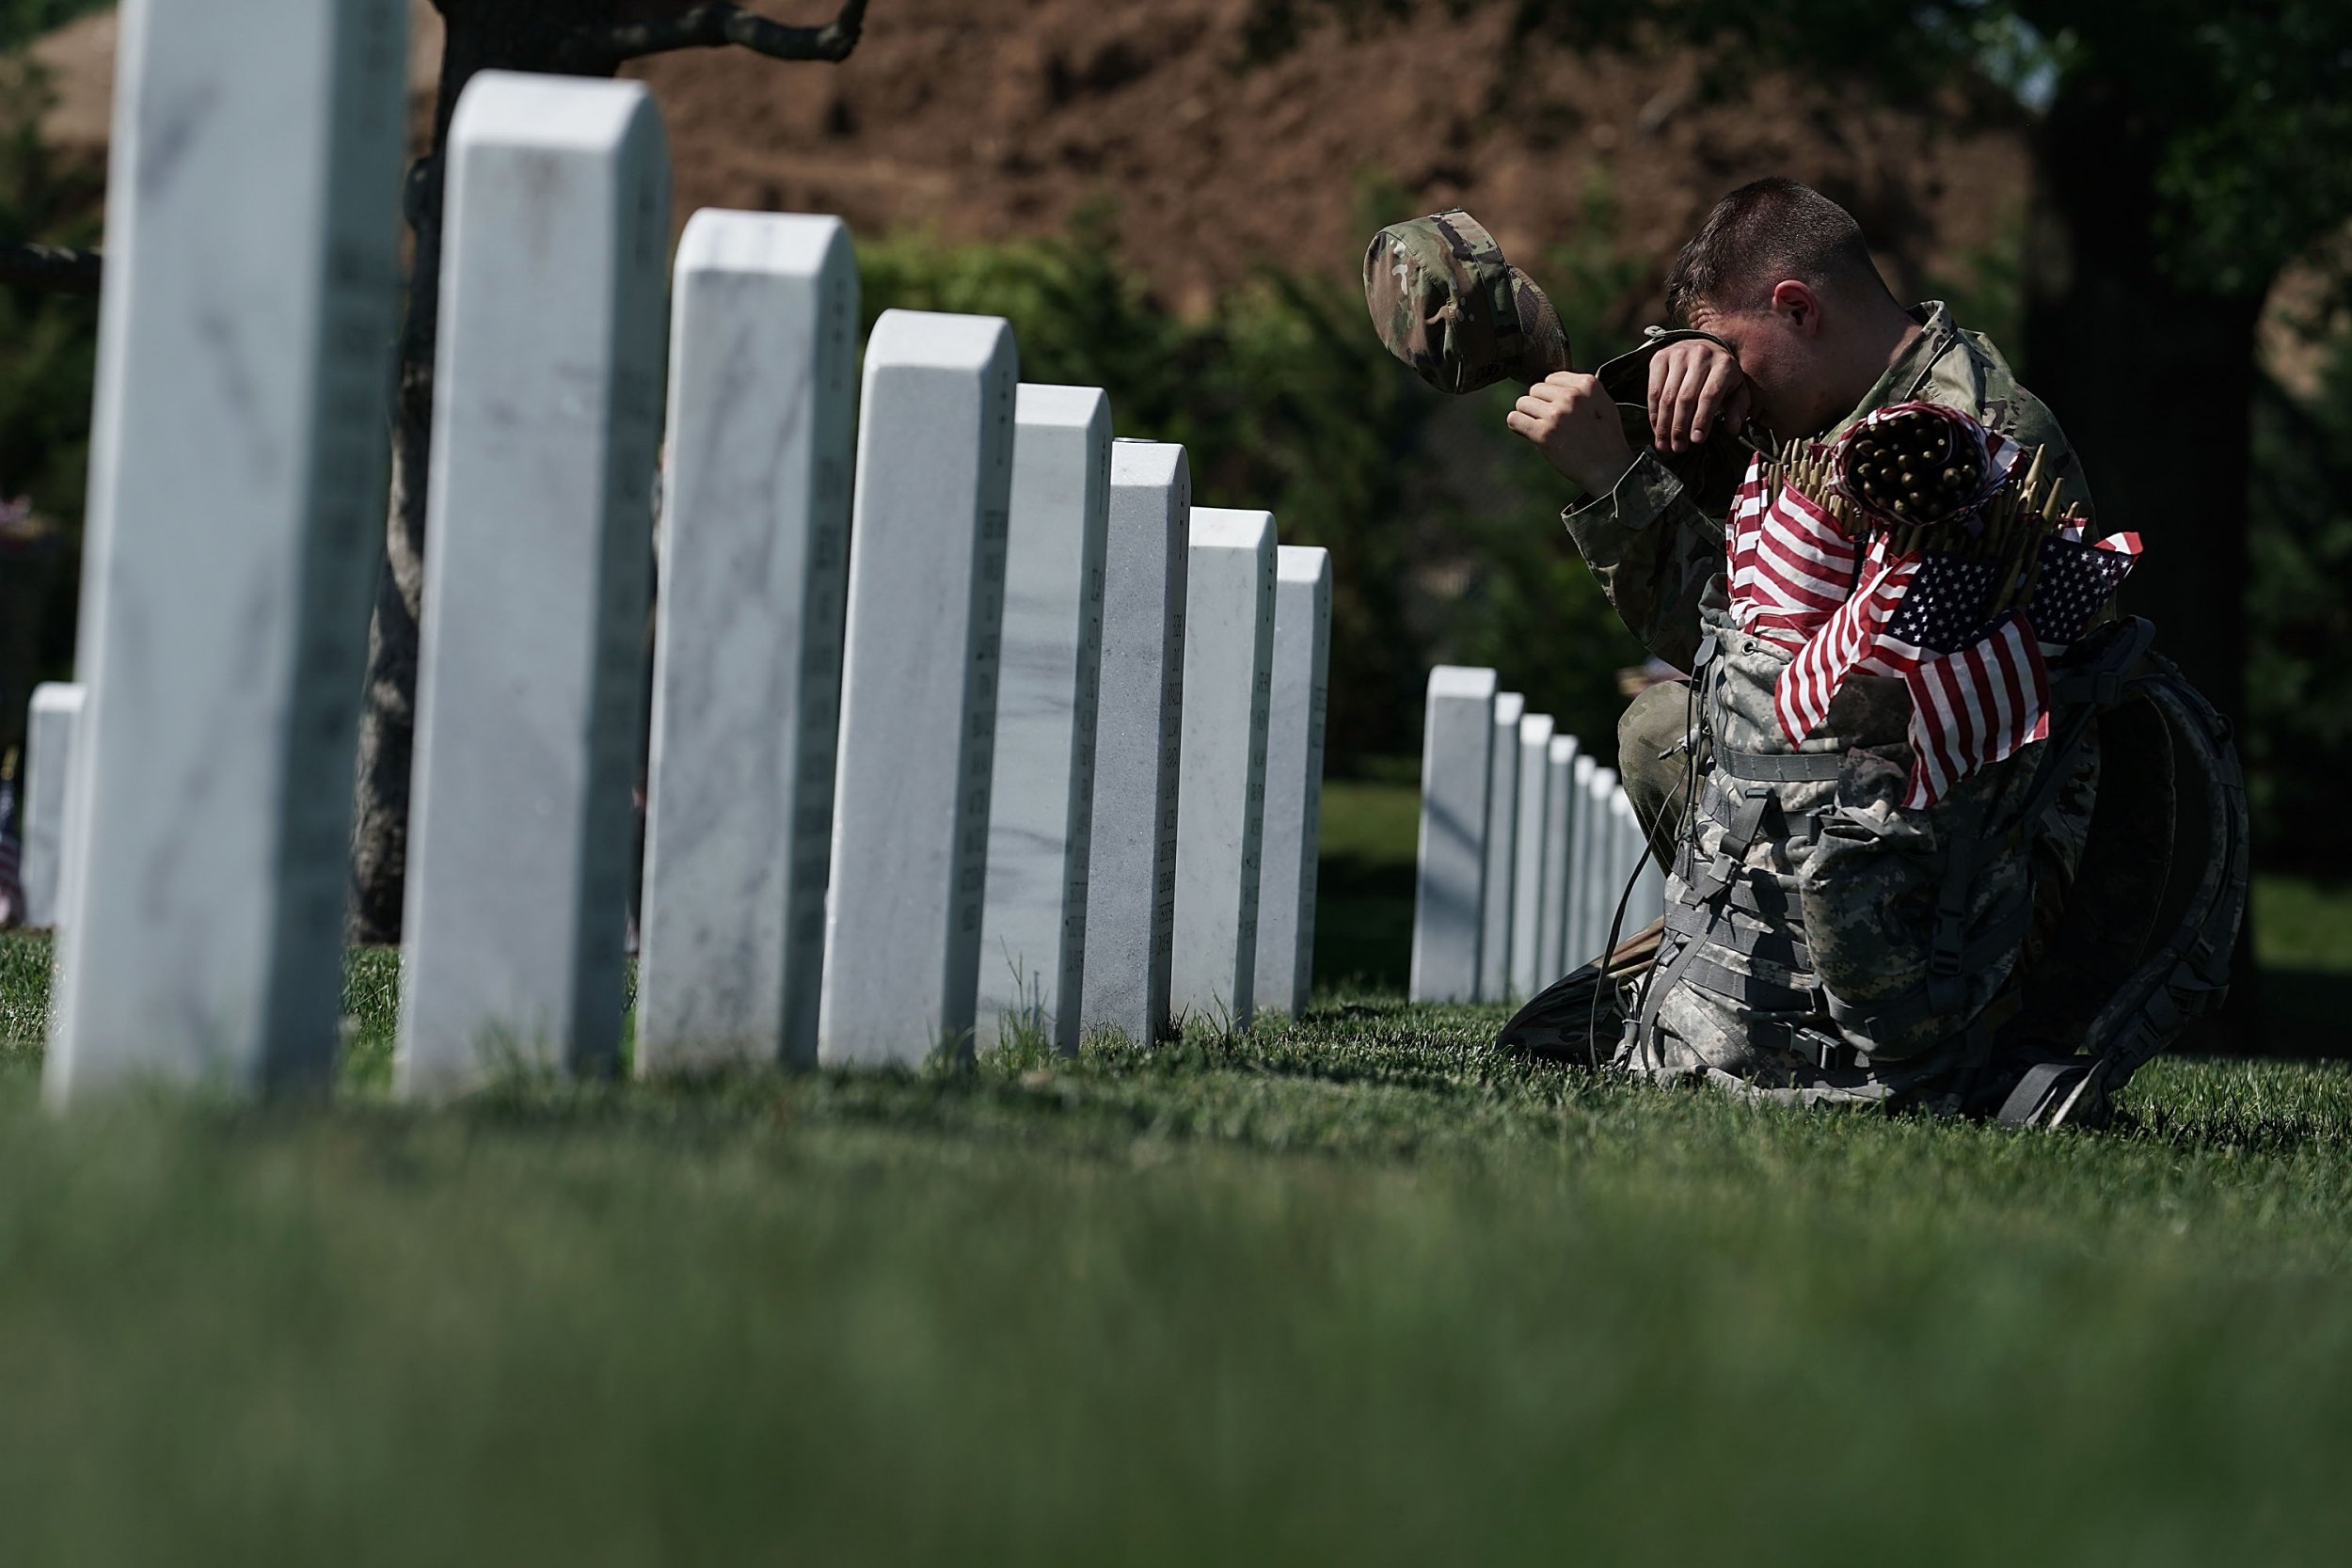 memorial day 2019 quotes honor fallen military members